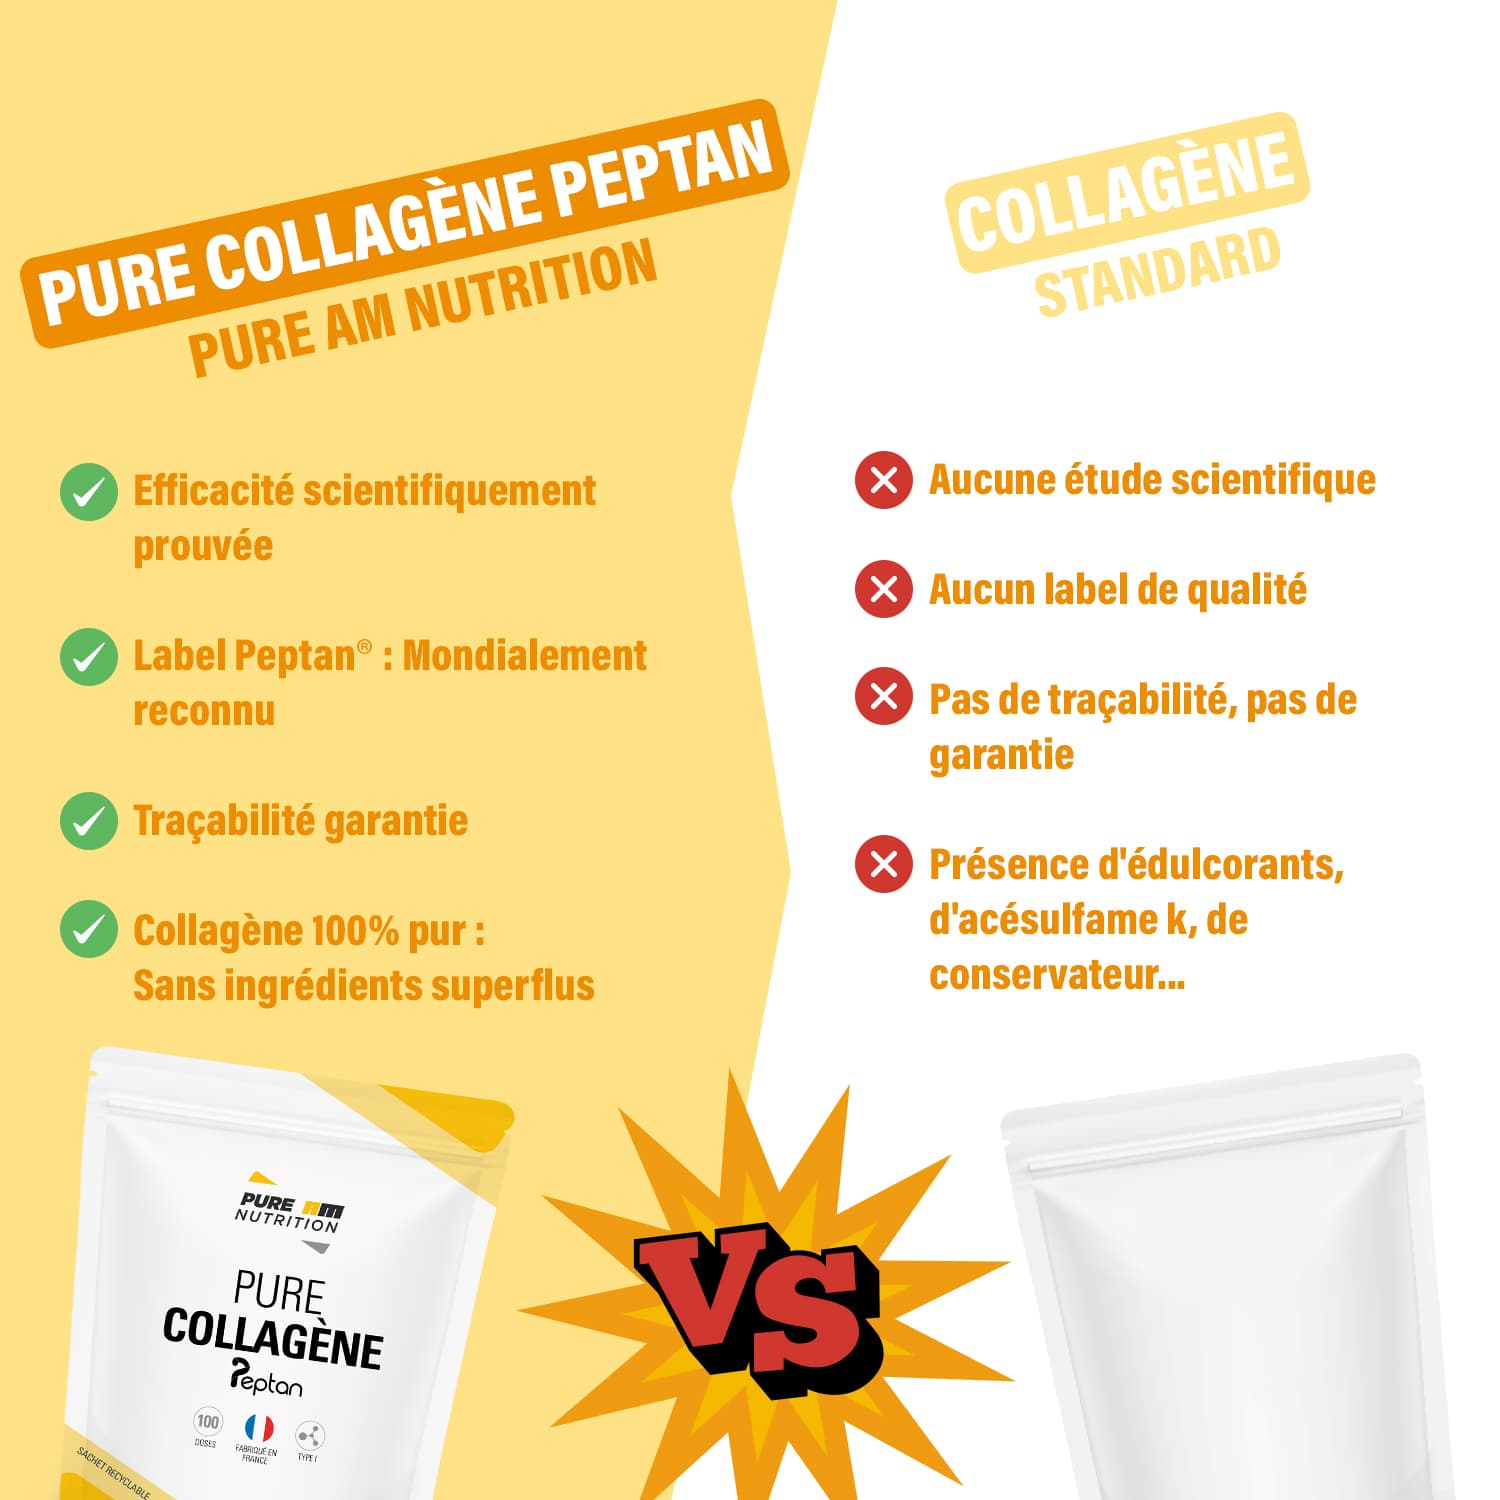 Pure collagène peptan AM Nutrition vs concurrents